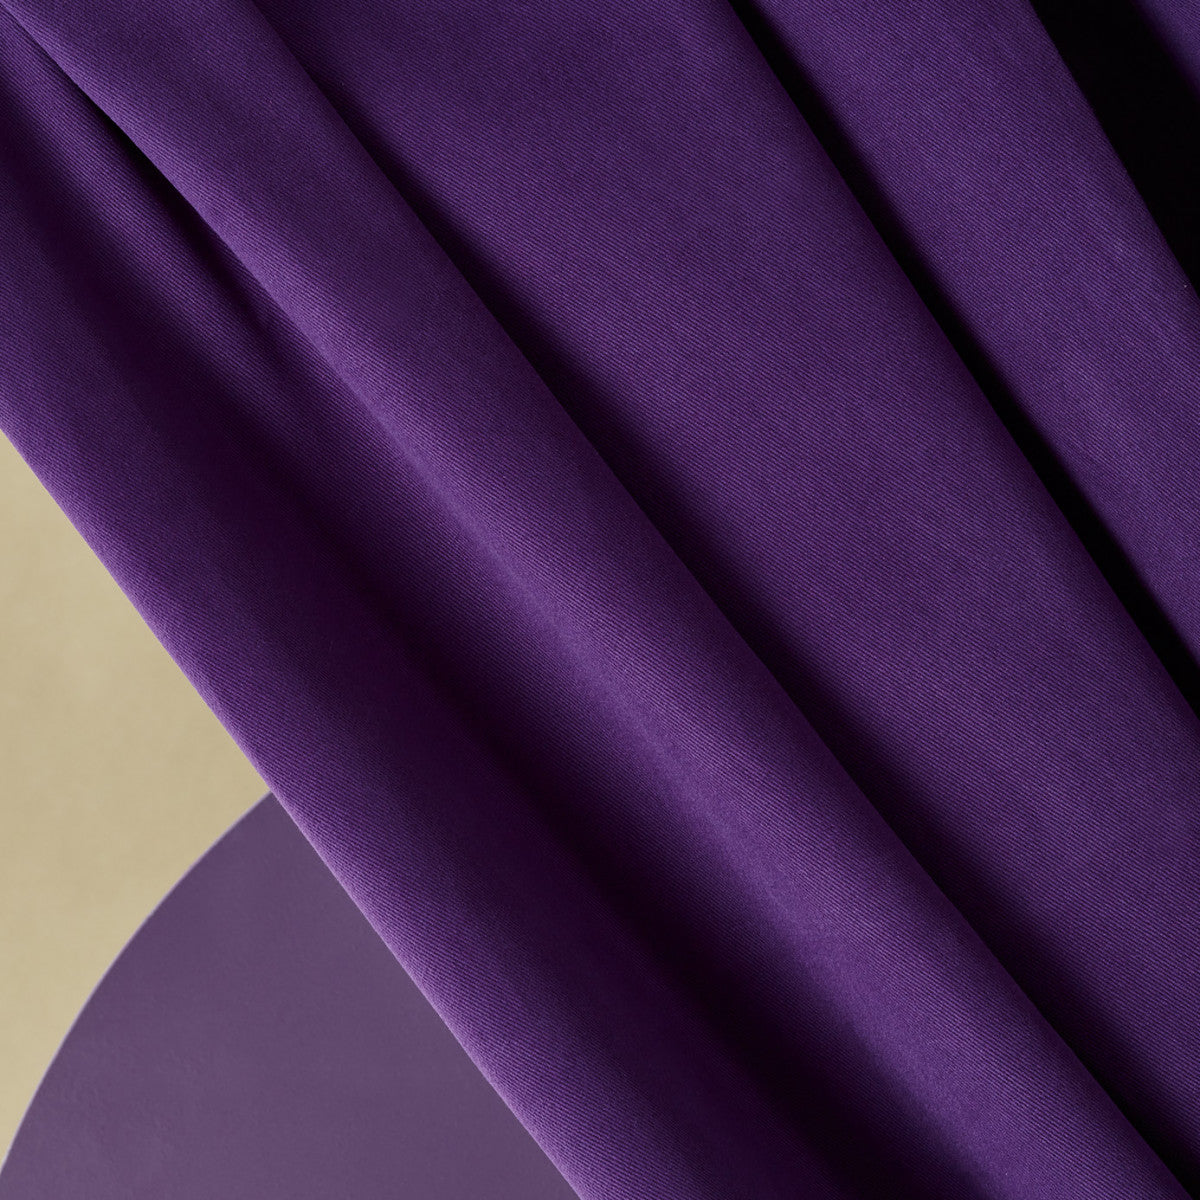 Atelier Brunette - Majestic Purple Cotton Gabardine Fabric